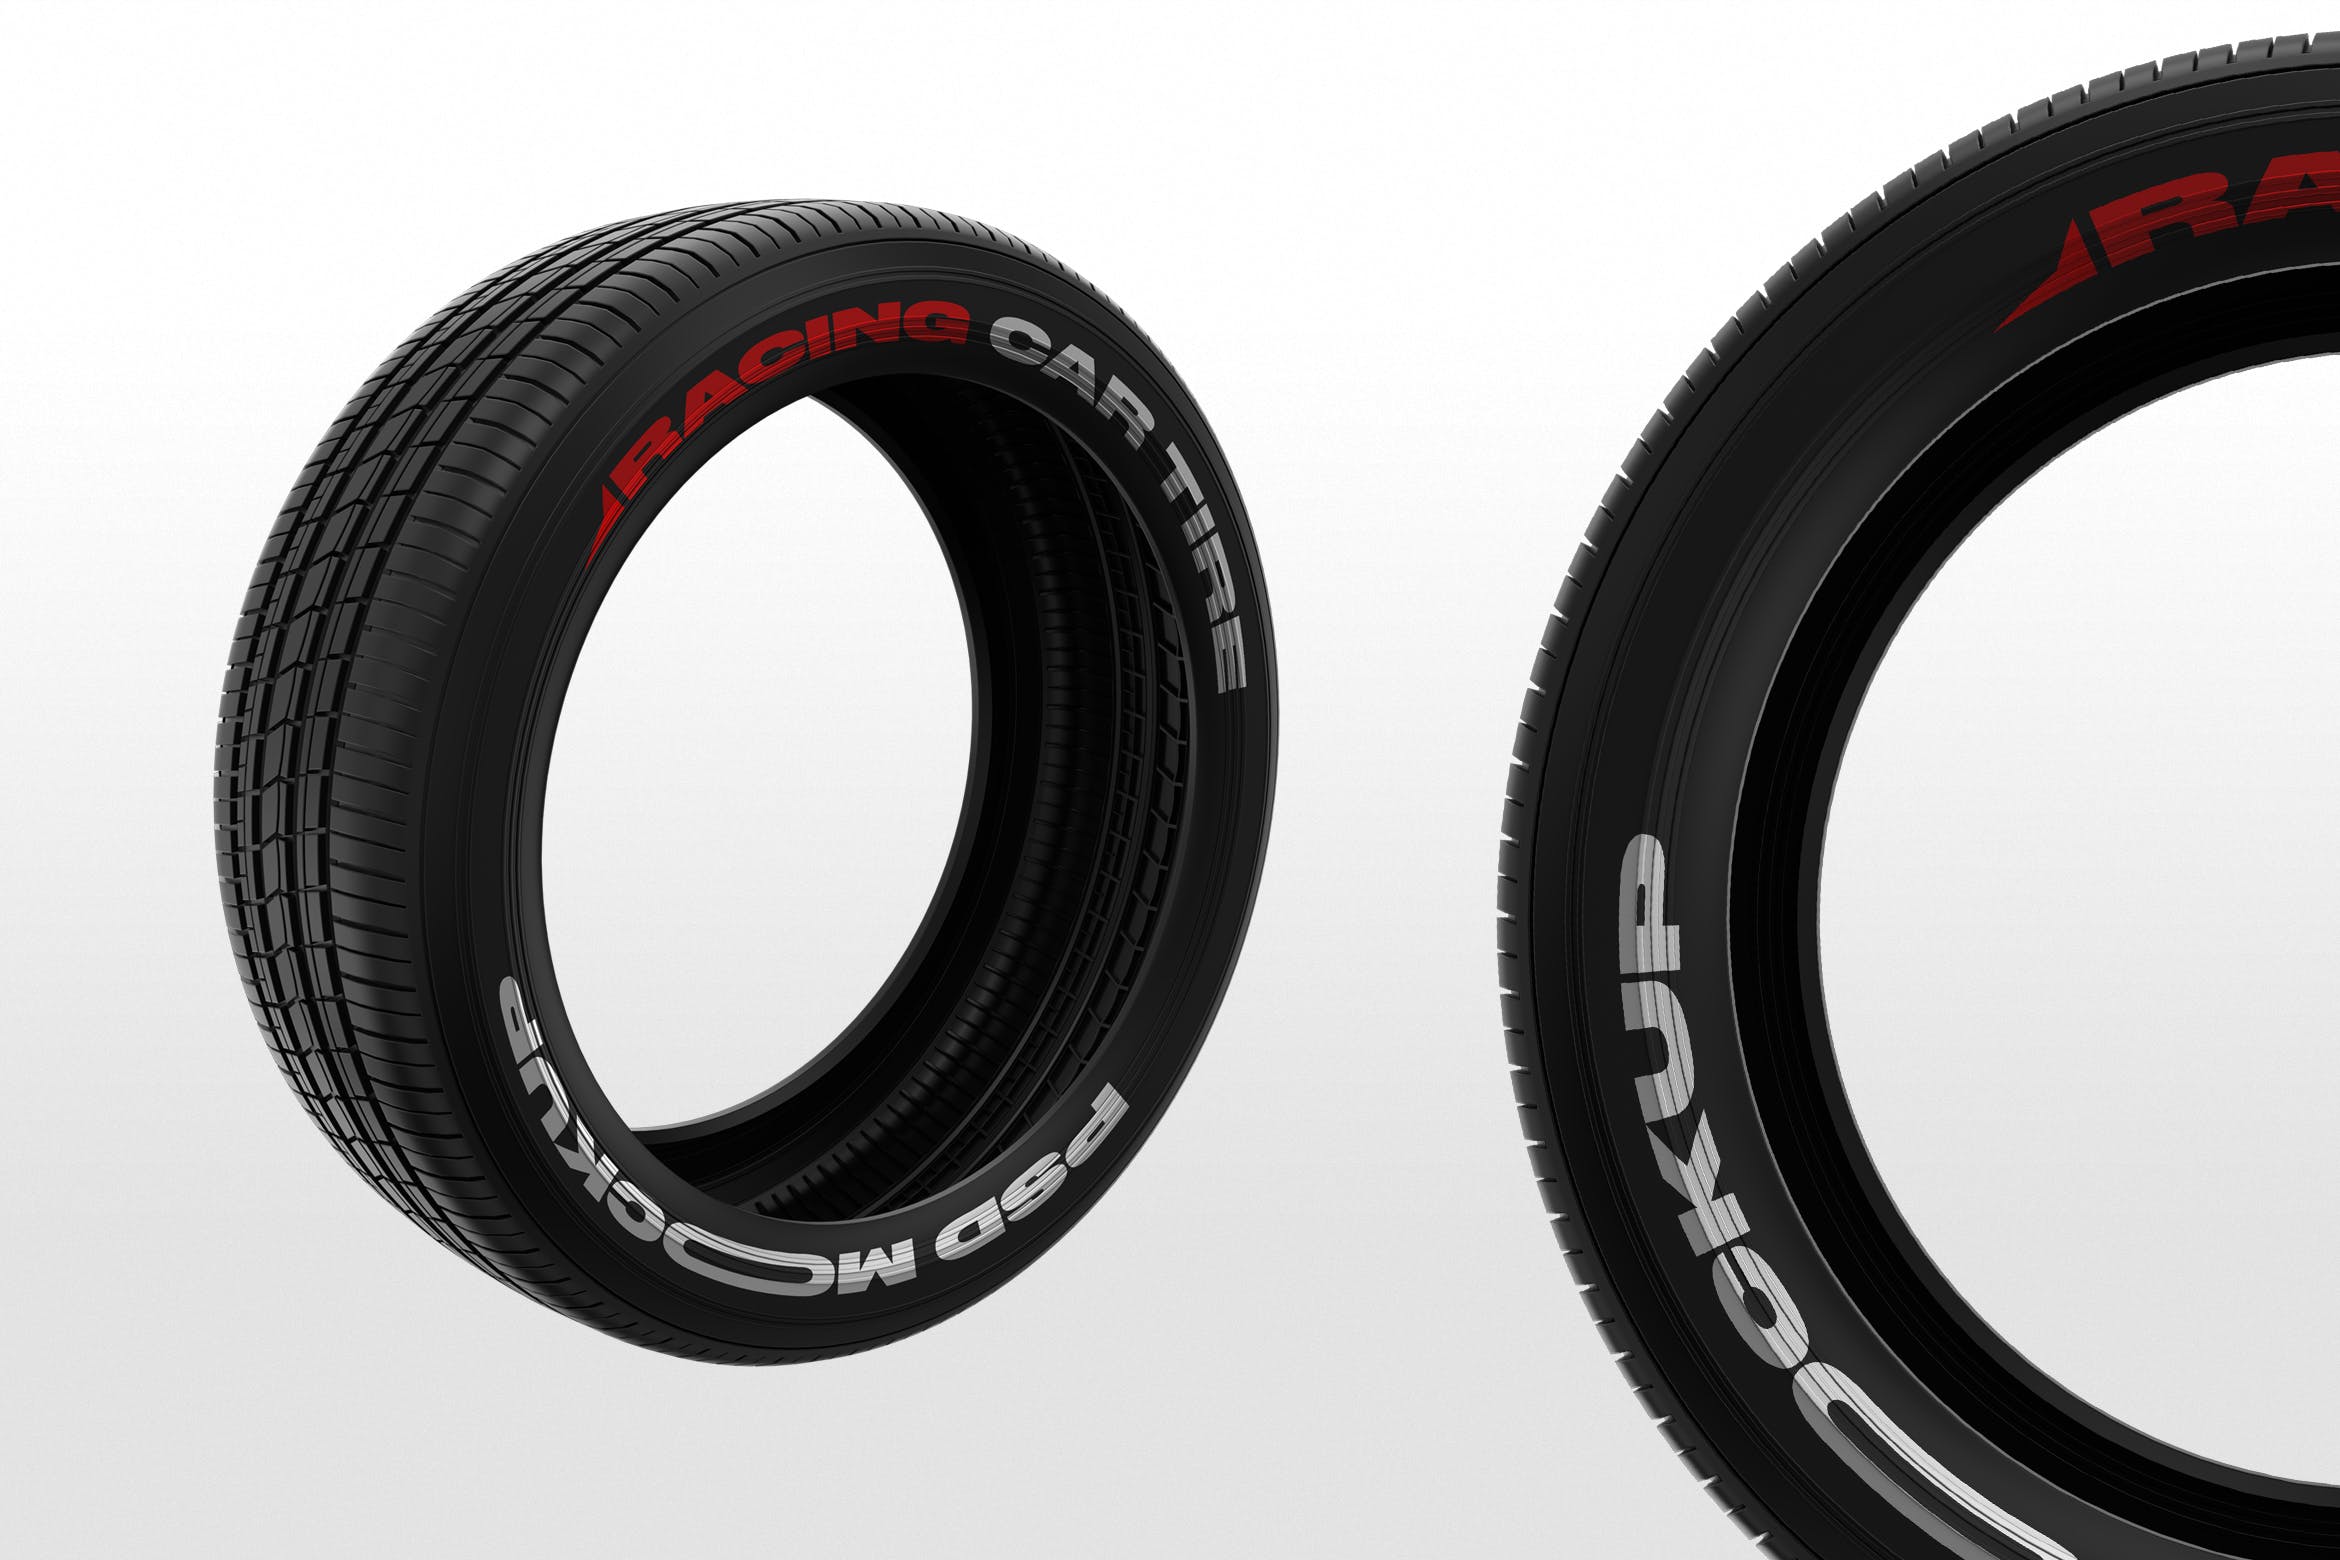 赛车轮胎外观喷涂图案设计预览素材库精选 Racing Car Tire Mockups插图